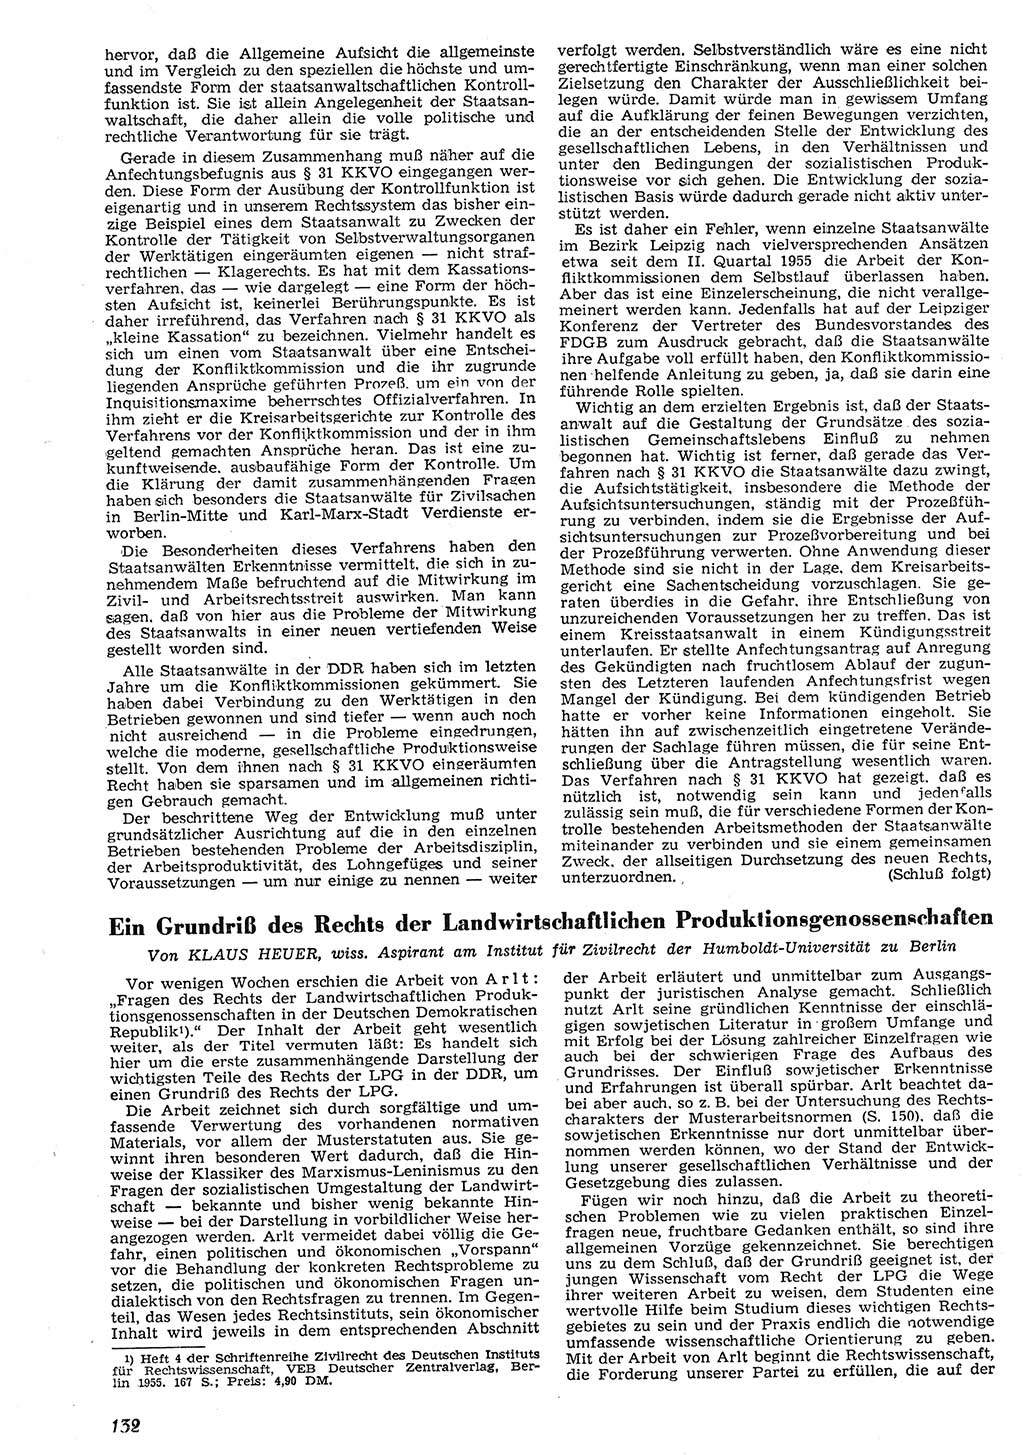 Neue Justiz (NJ), Zeitschrift für Recht und Rechtswissenschaft [Deutsche Demokratische Republik (DDR)], 10. Jahrgang 1956, Seite 132 (NJ DDR 1956, S. 132)